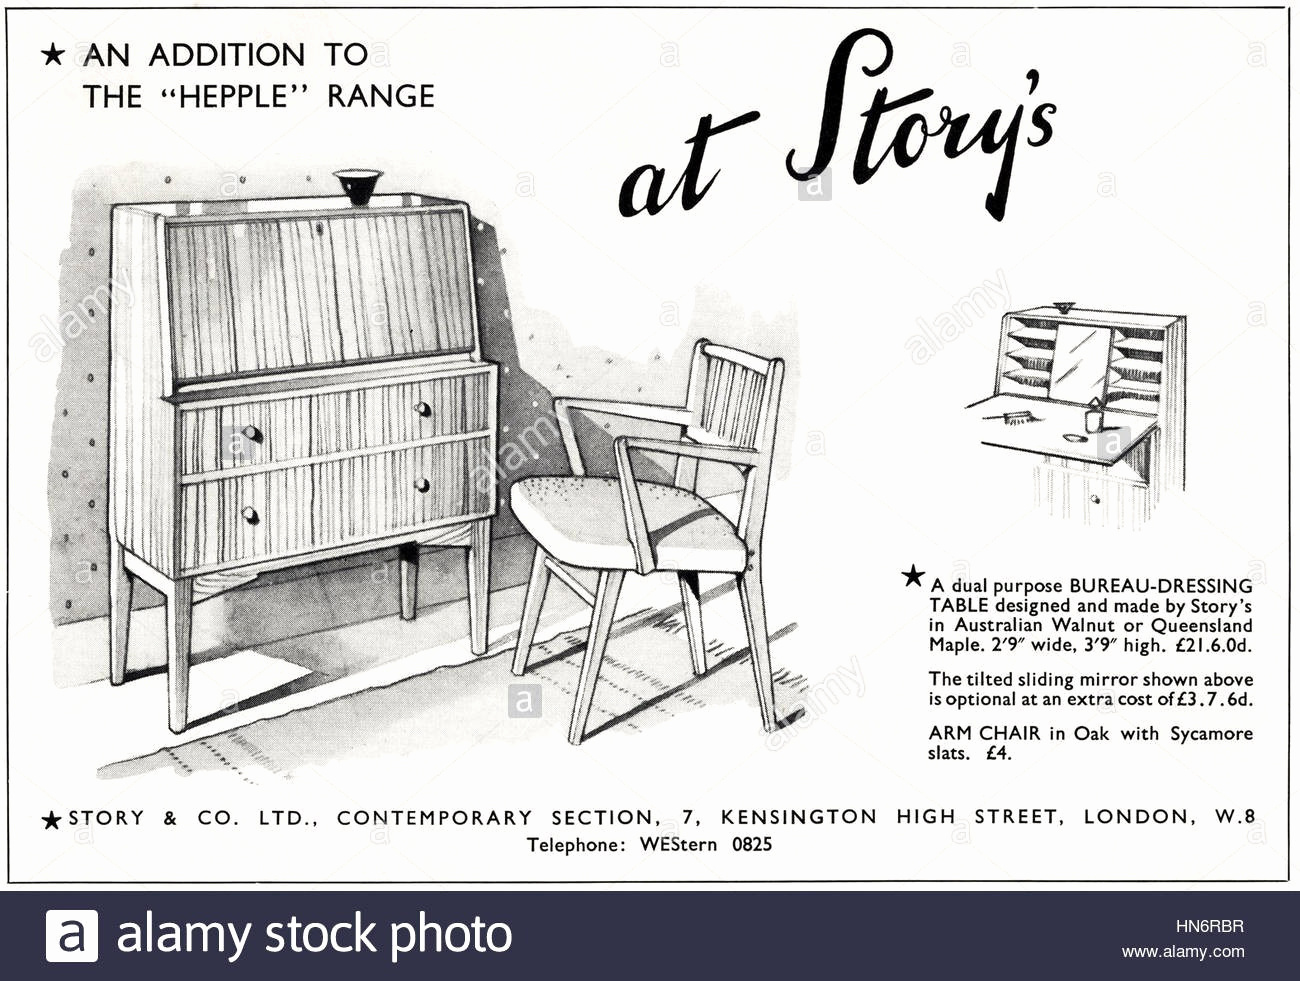 fauteuil mobilier de france charmant meuble en rotin meuble de france elegant fauteuil mobilier de france of fauteuil mobilier de france